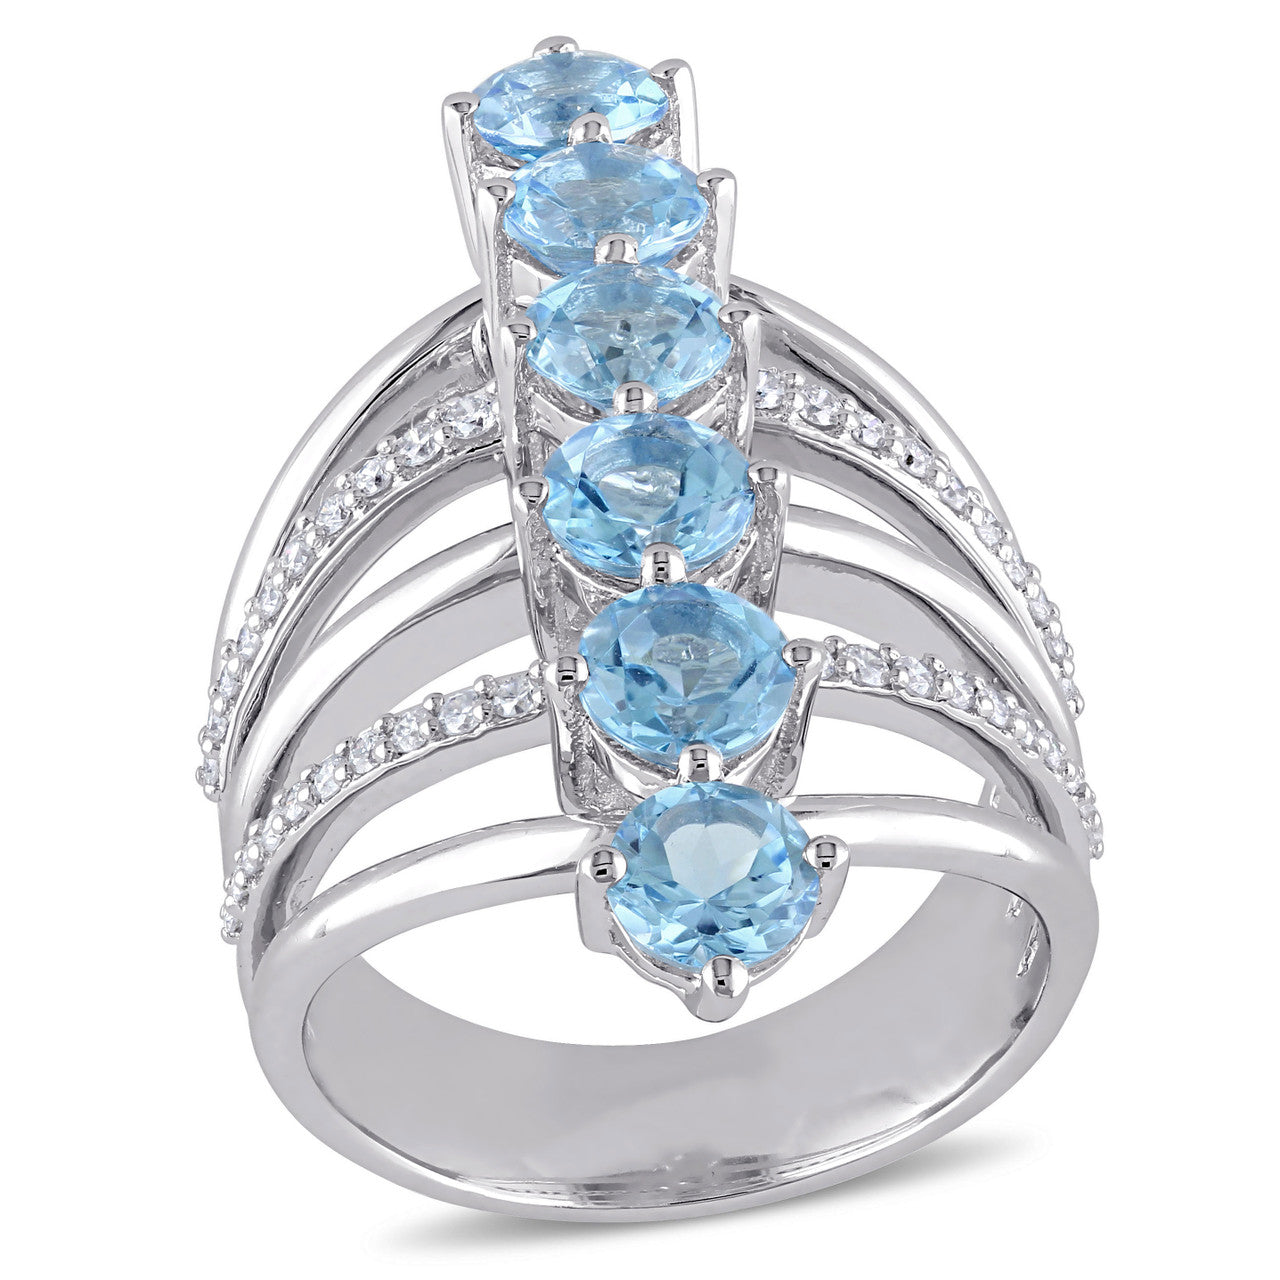 Julianna B Swiss Blue Topaz & Diamond Ring in Sterling Silver - 75000002173 | Ice Jewellery Australia